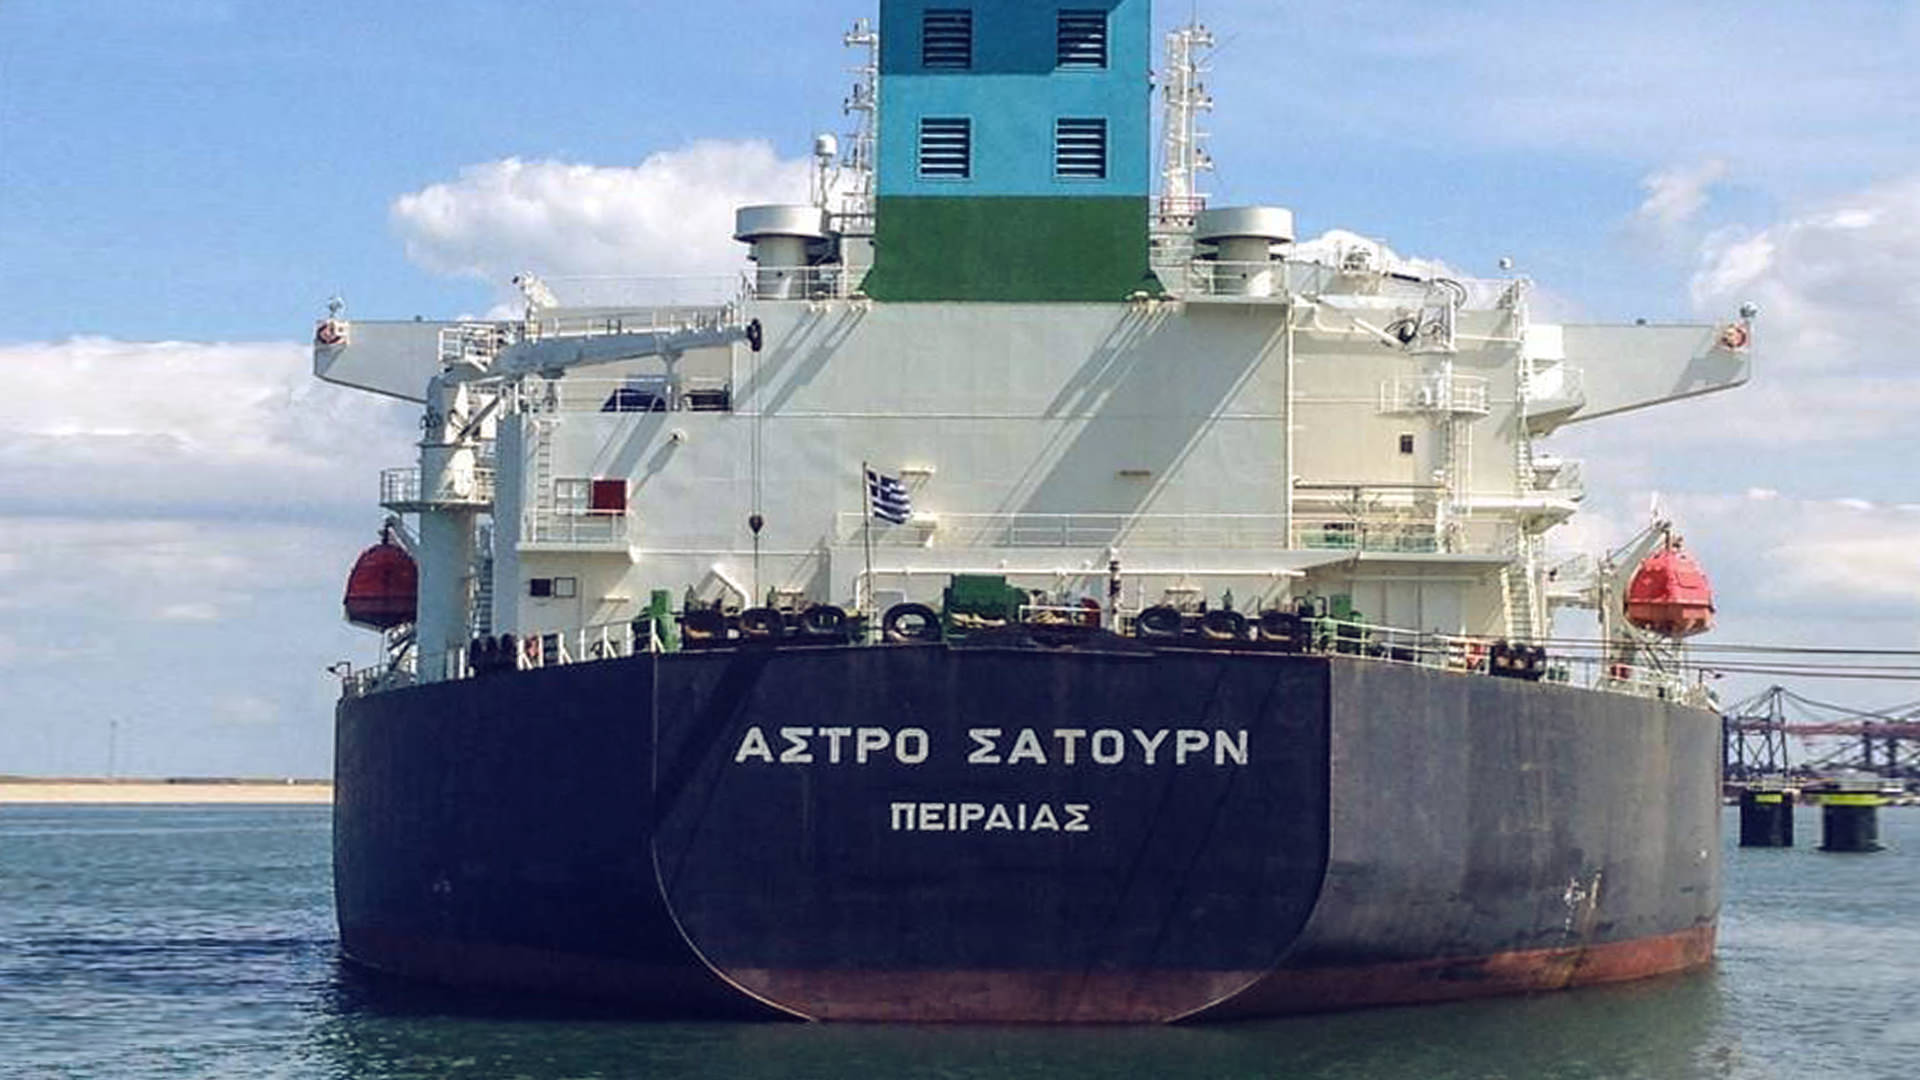 Astro Satourn tanker